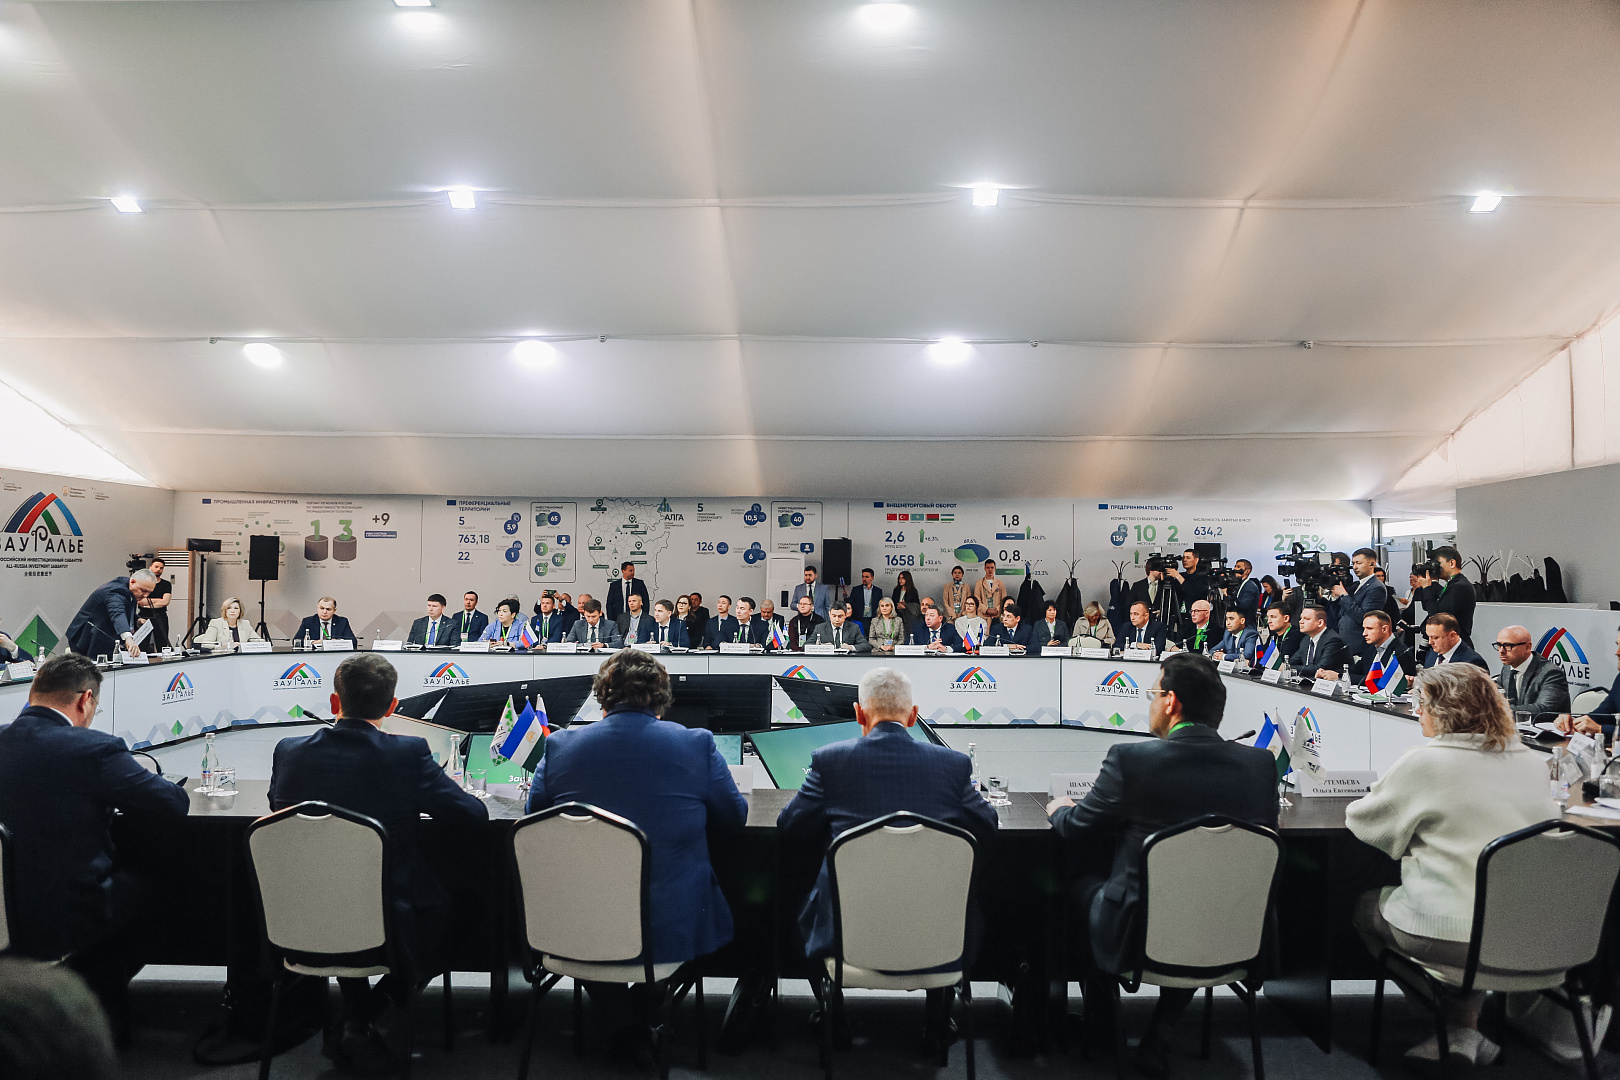 Заседание инвестиционного комитета Республики Башкортостан в формате «Инвестиционный час»